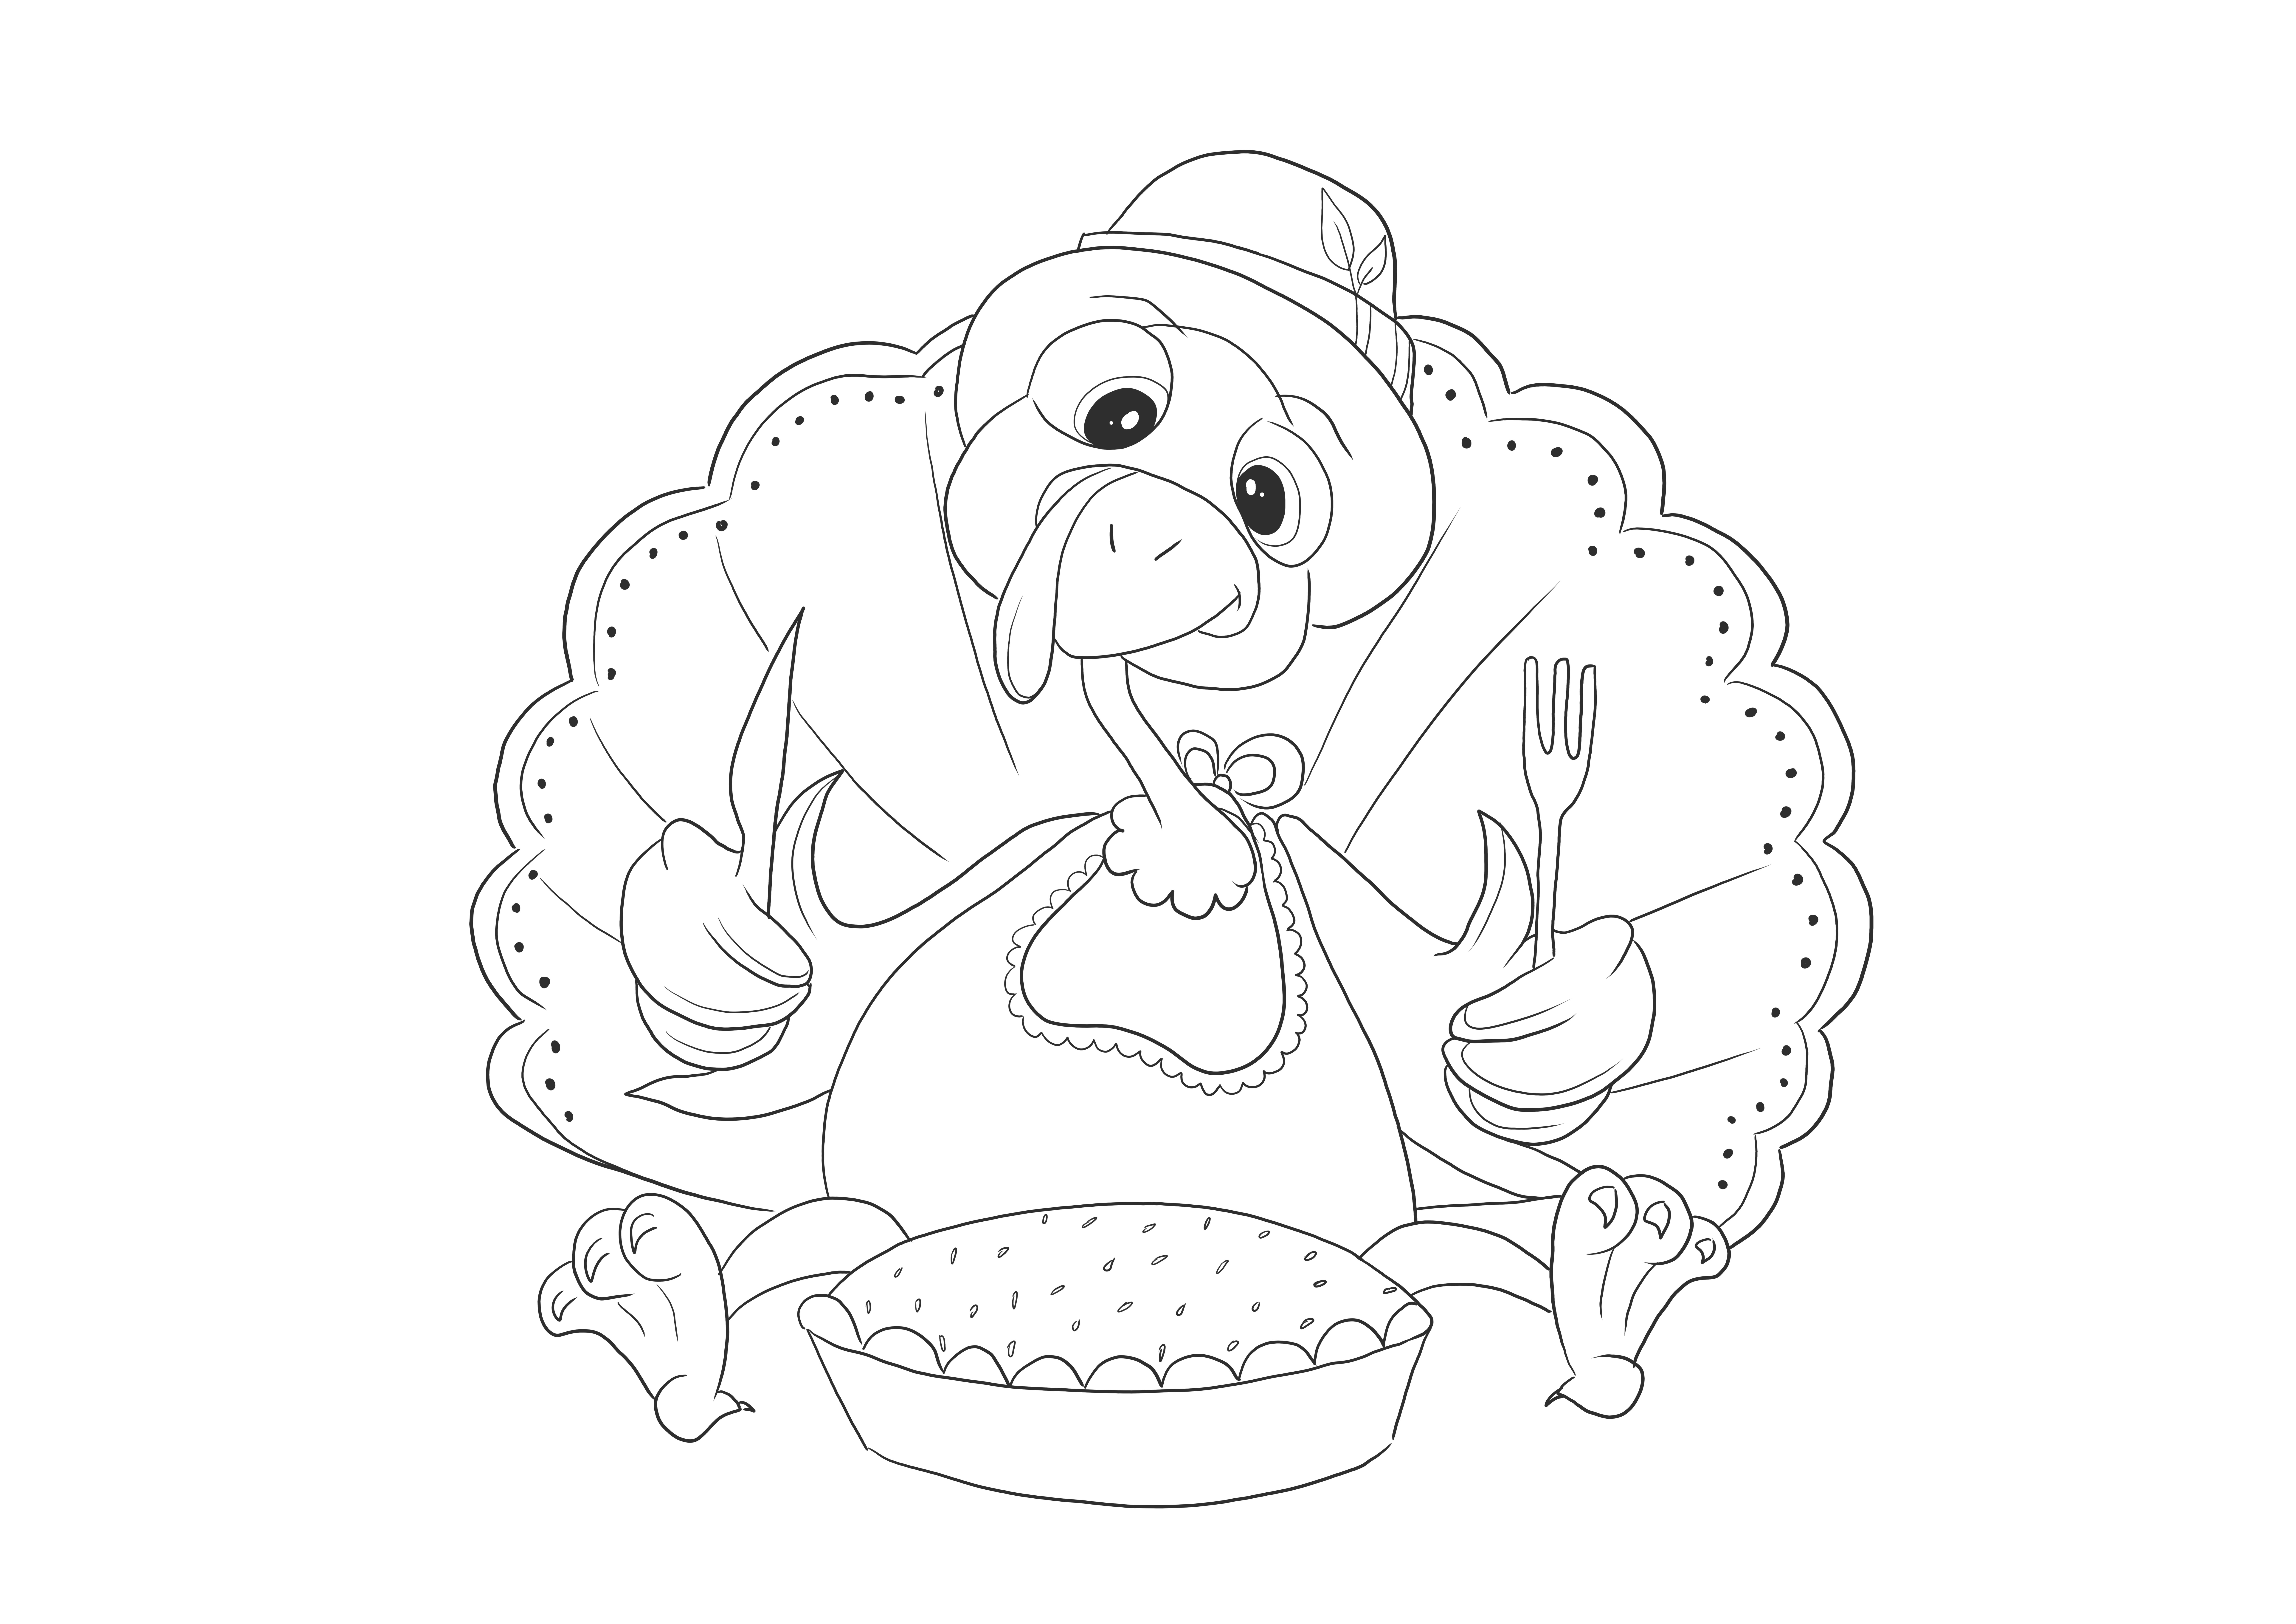 Divertido pavo comiendo una cena de Acción de Gracias para descargar o imprimir gratis